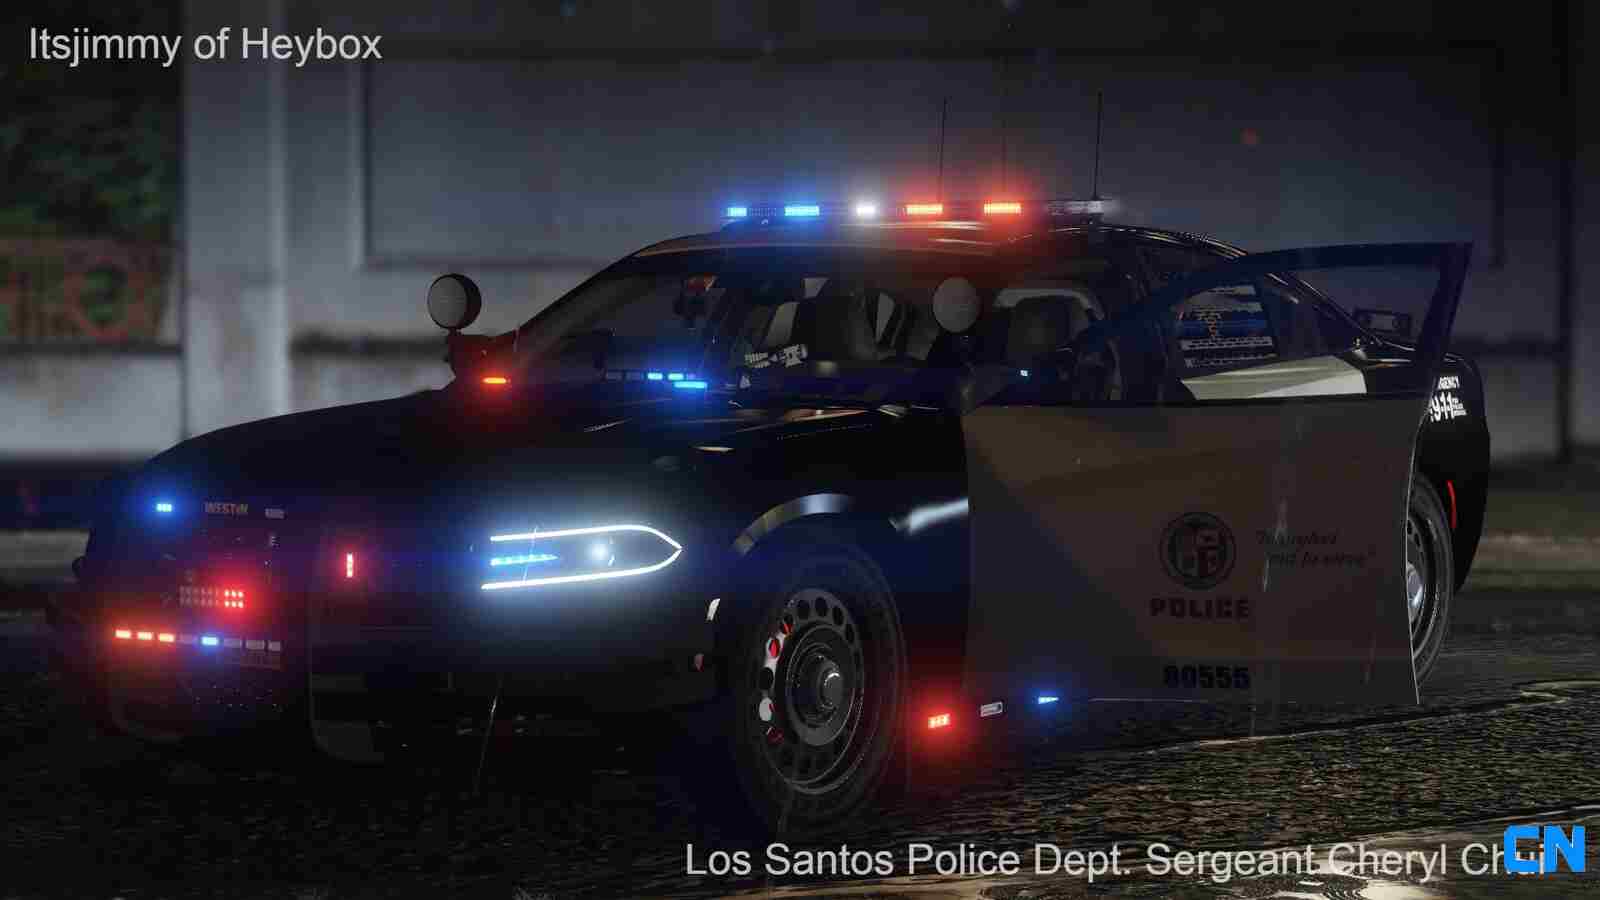 [虚构涂装]LAPD_2016道奇战马_Legacy警报系统